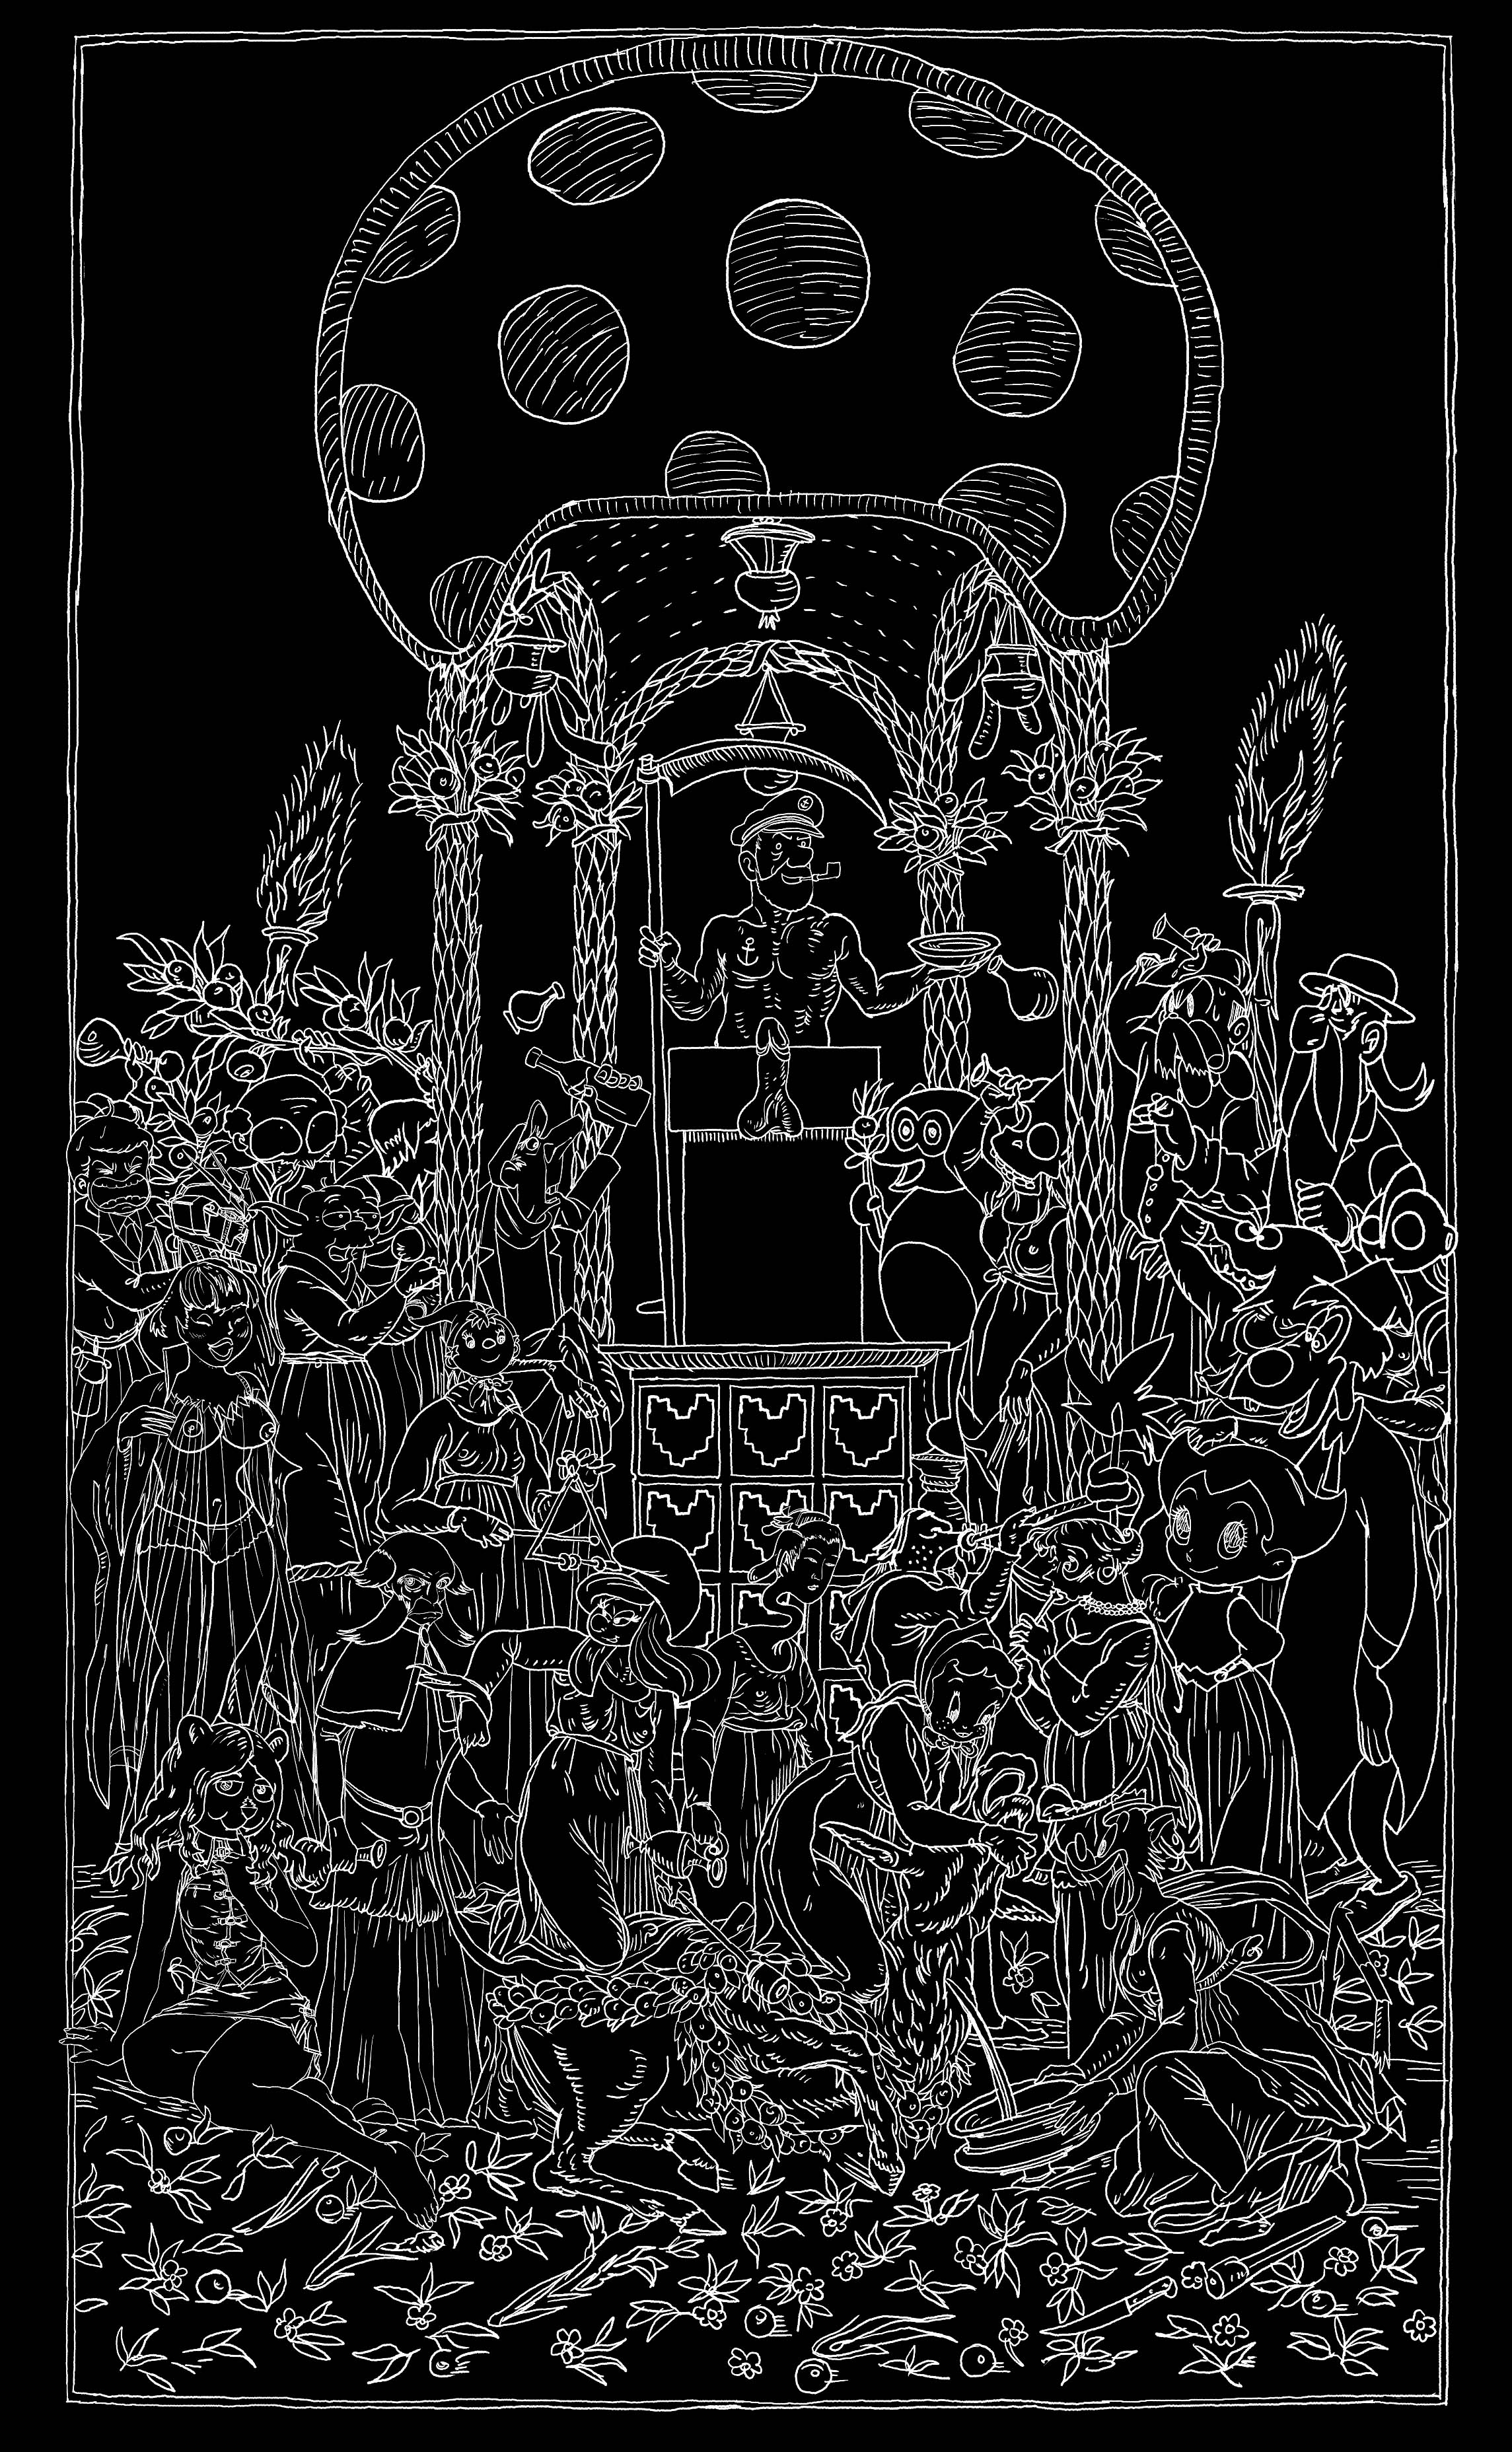 Nicolas Buffe - 2007---09 - Hypnerotomachies - priape, 74 x 160 cm, ink on panel